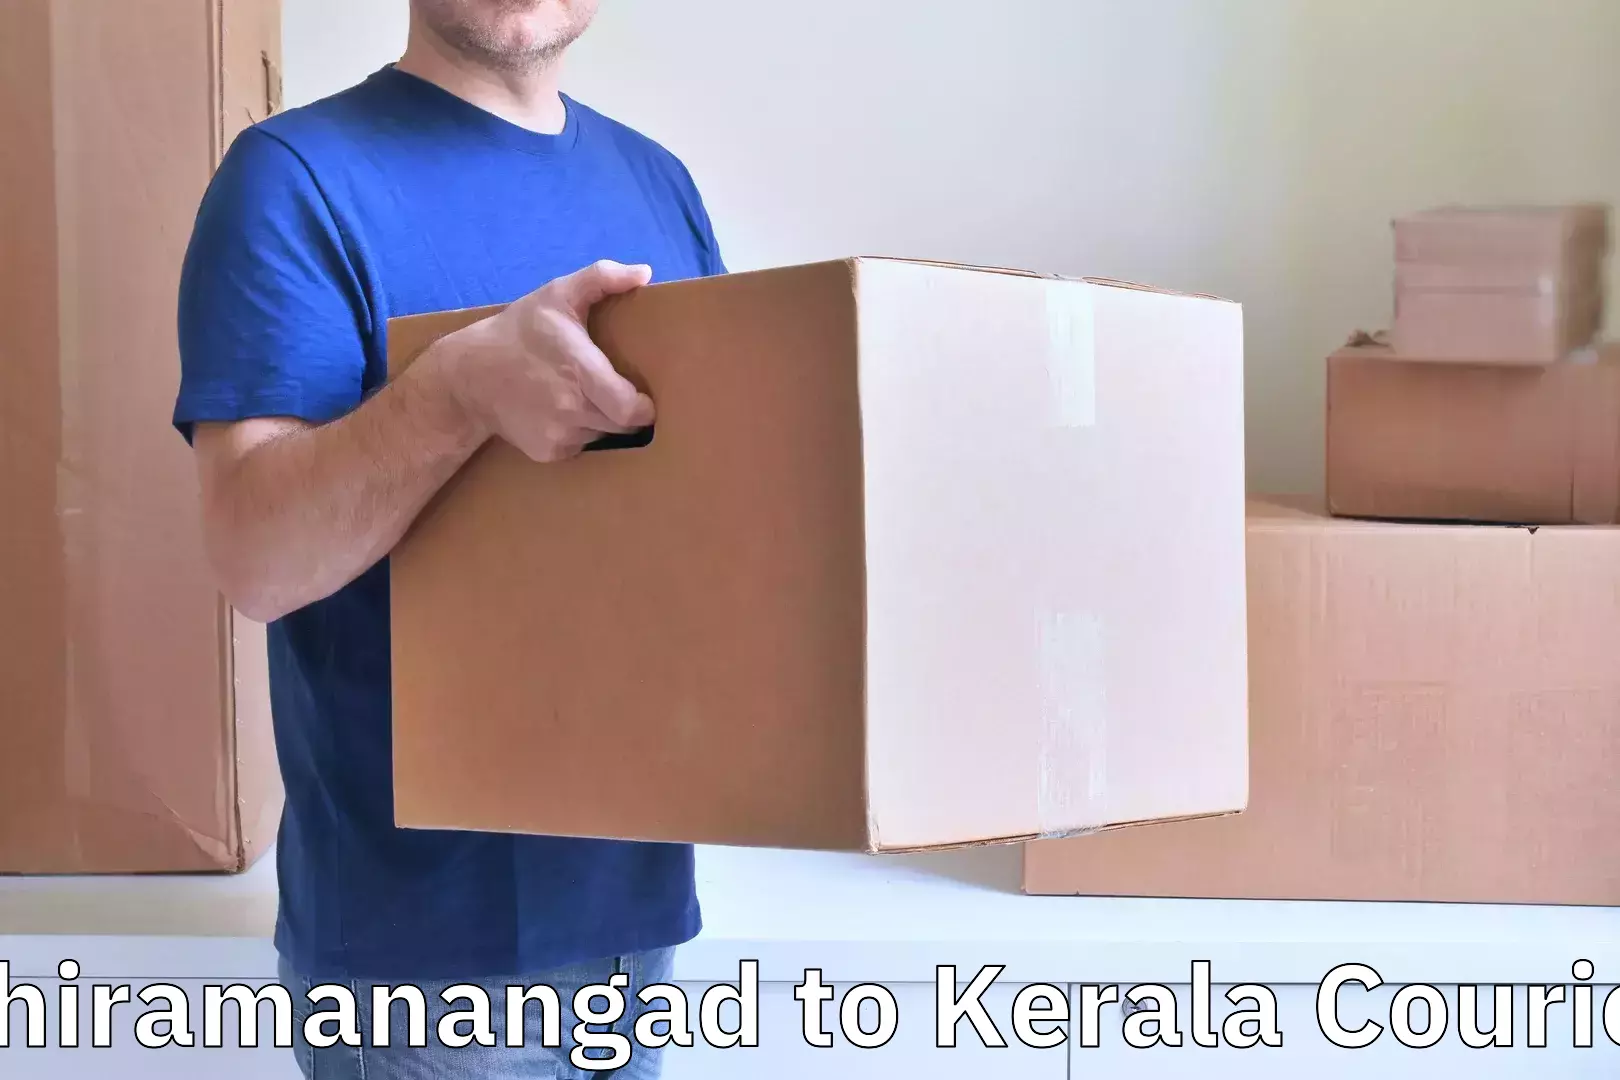 Personalized luggage shipping Chiramanangad to Pathanamthitta